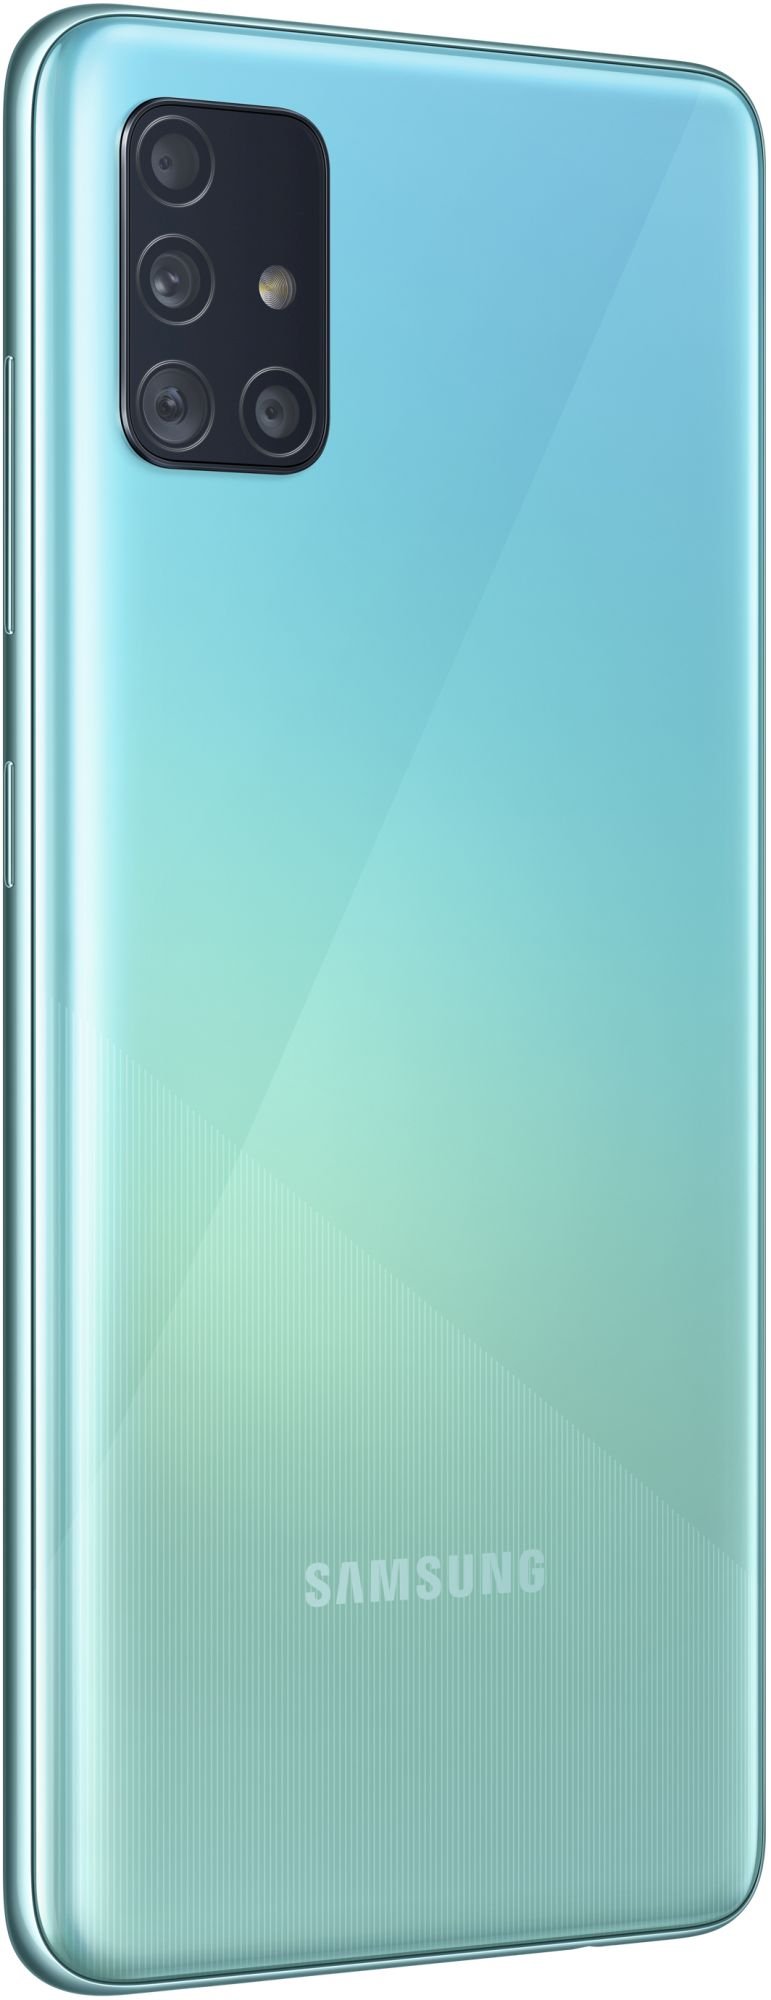 Samsung Galaxy A51 64GB Blue